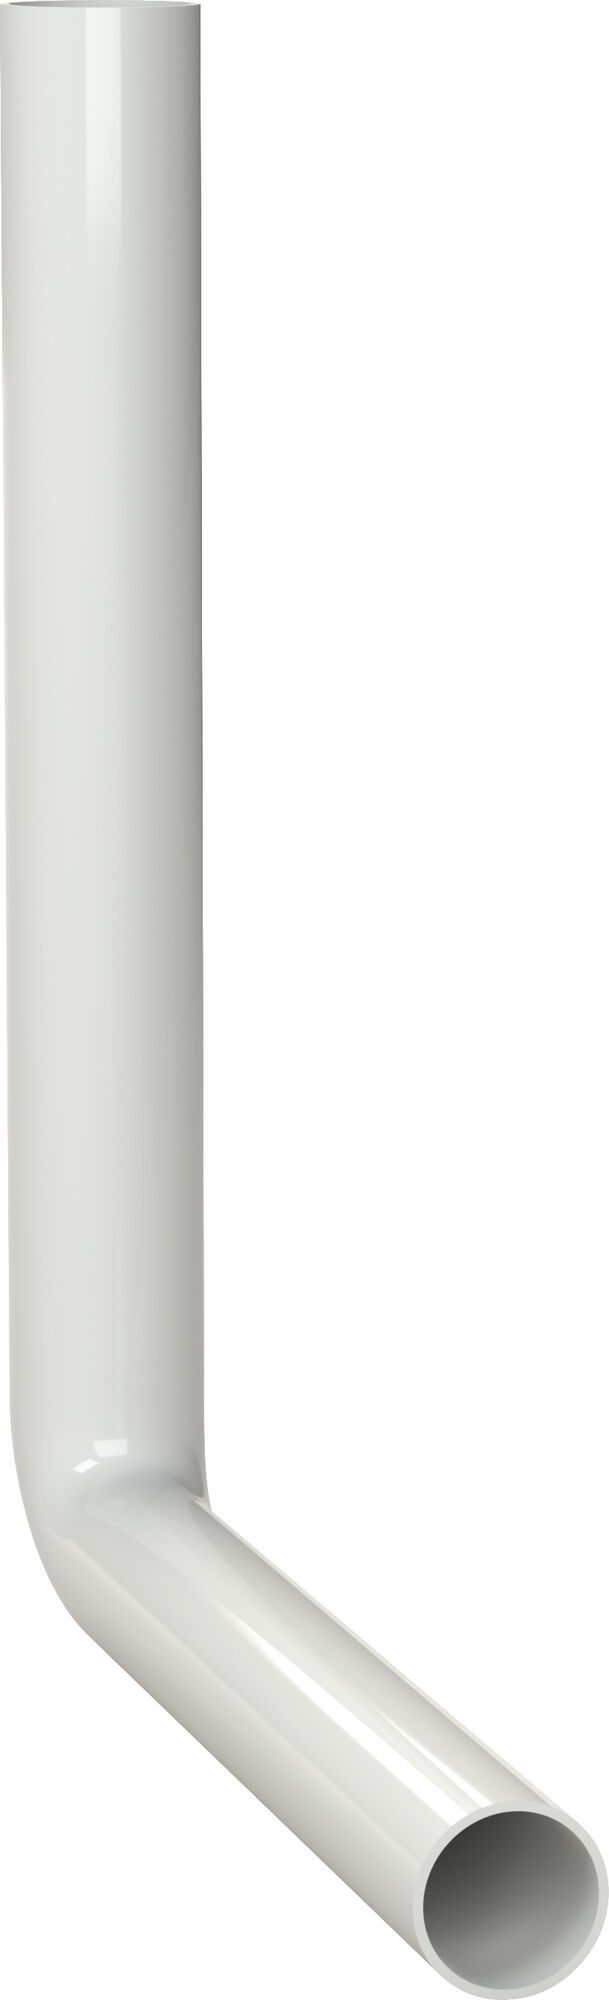 SPÜLROHRBOGEN 390 x 350 mm, weiß